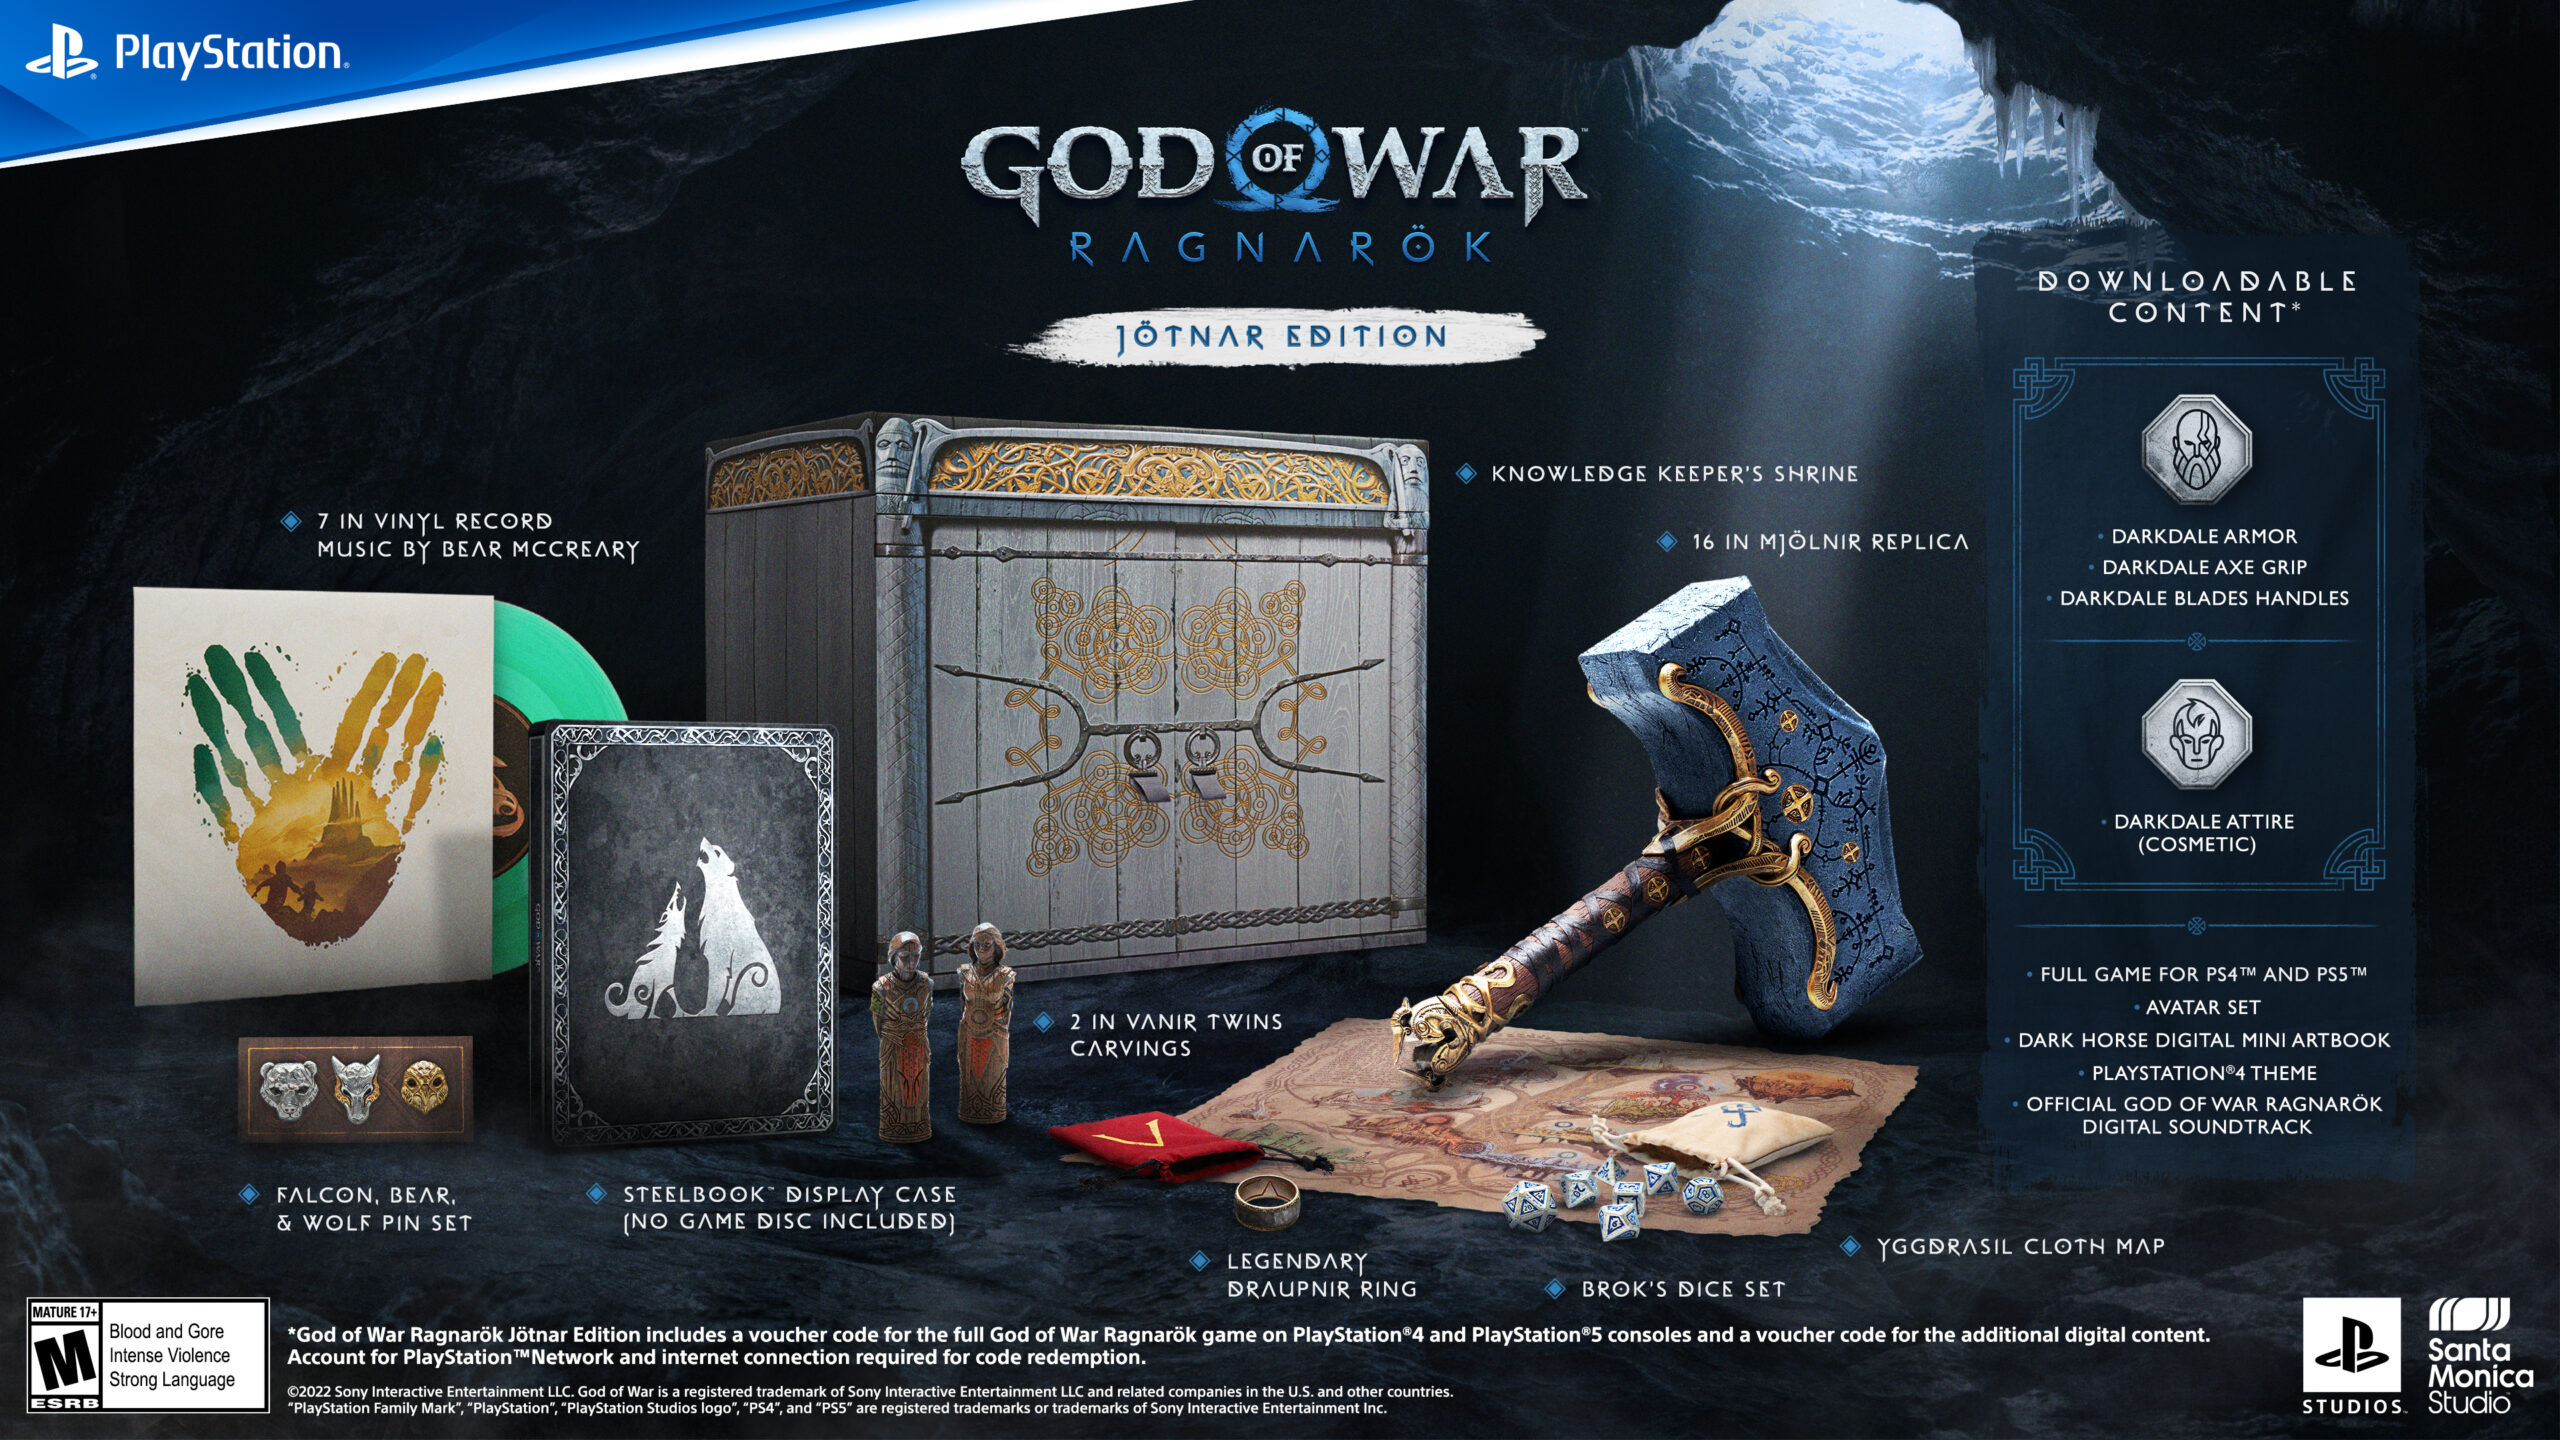 USADO: Console Playstation 5 + God of War Ragnarök